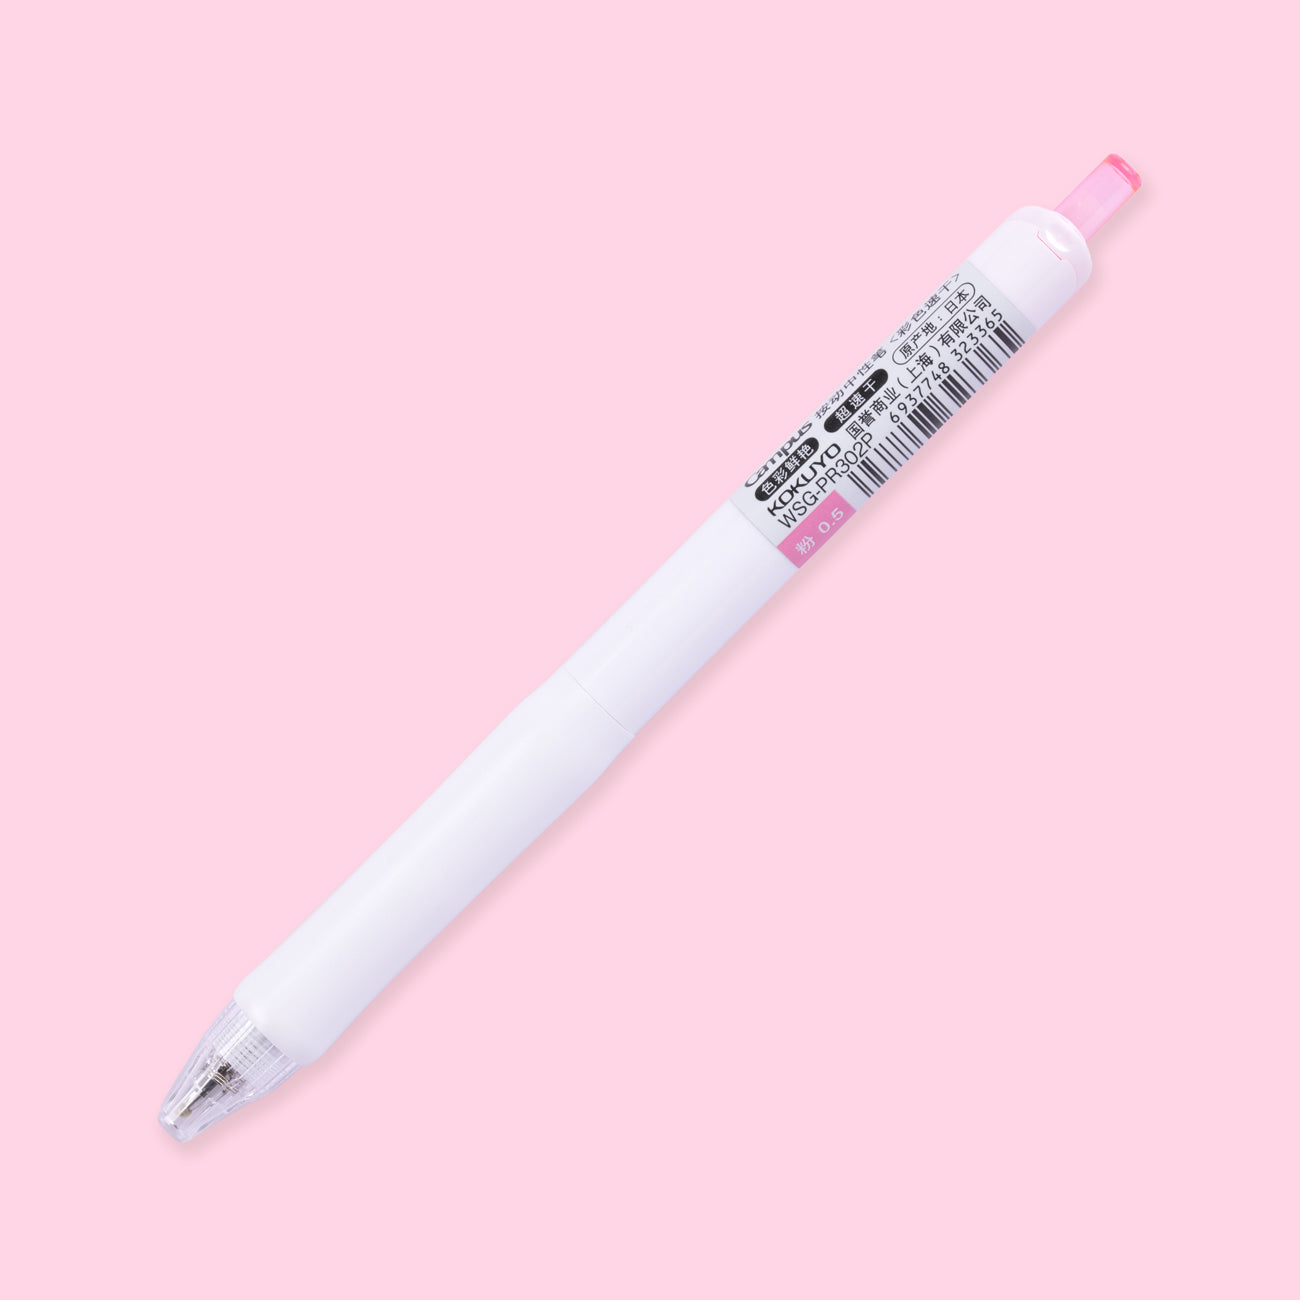 Kokuyo Campus viviDRY Retractable Gel Pen - 0.5 mm - Pink